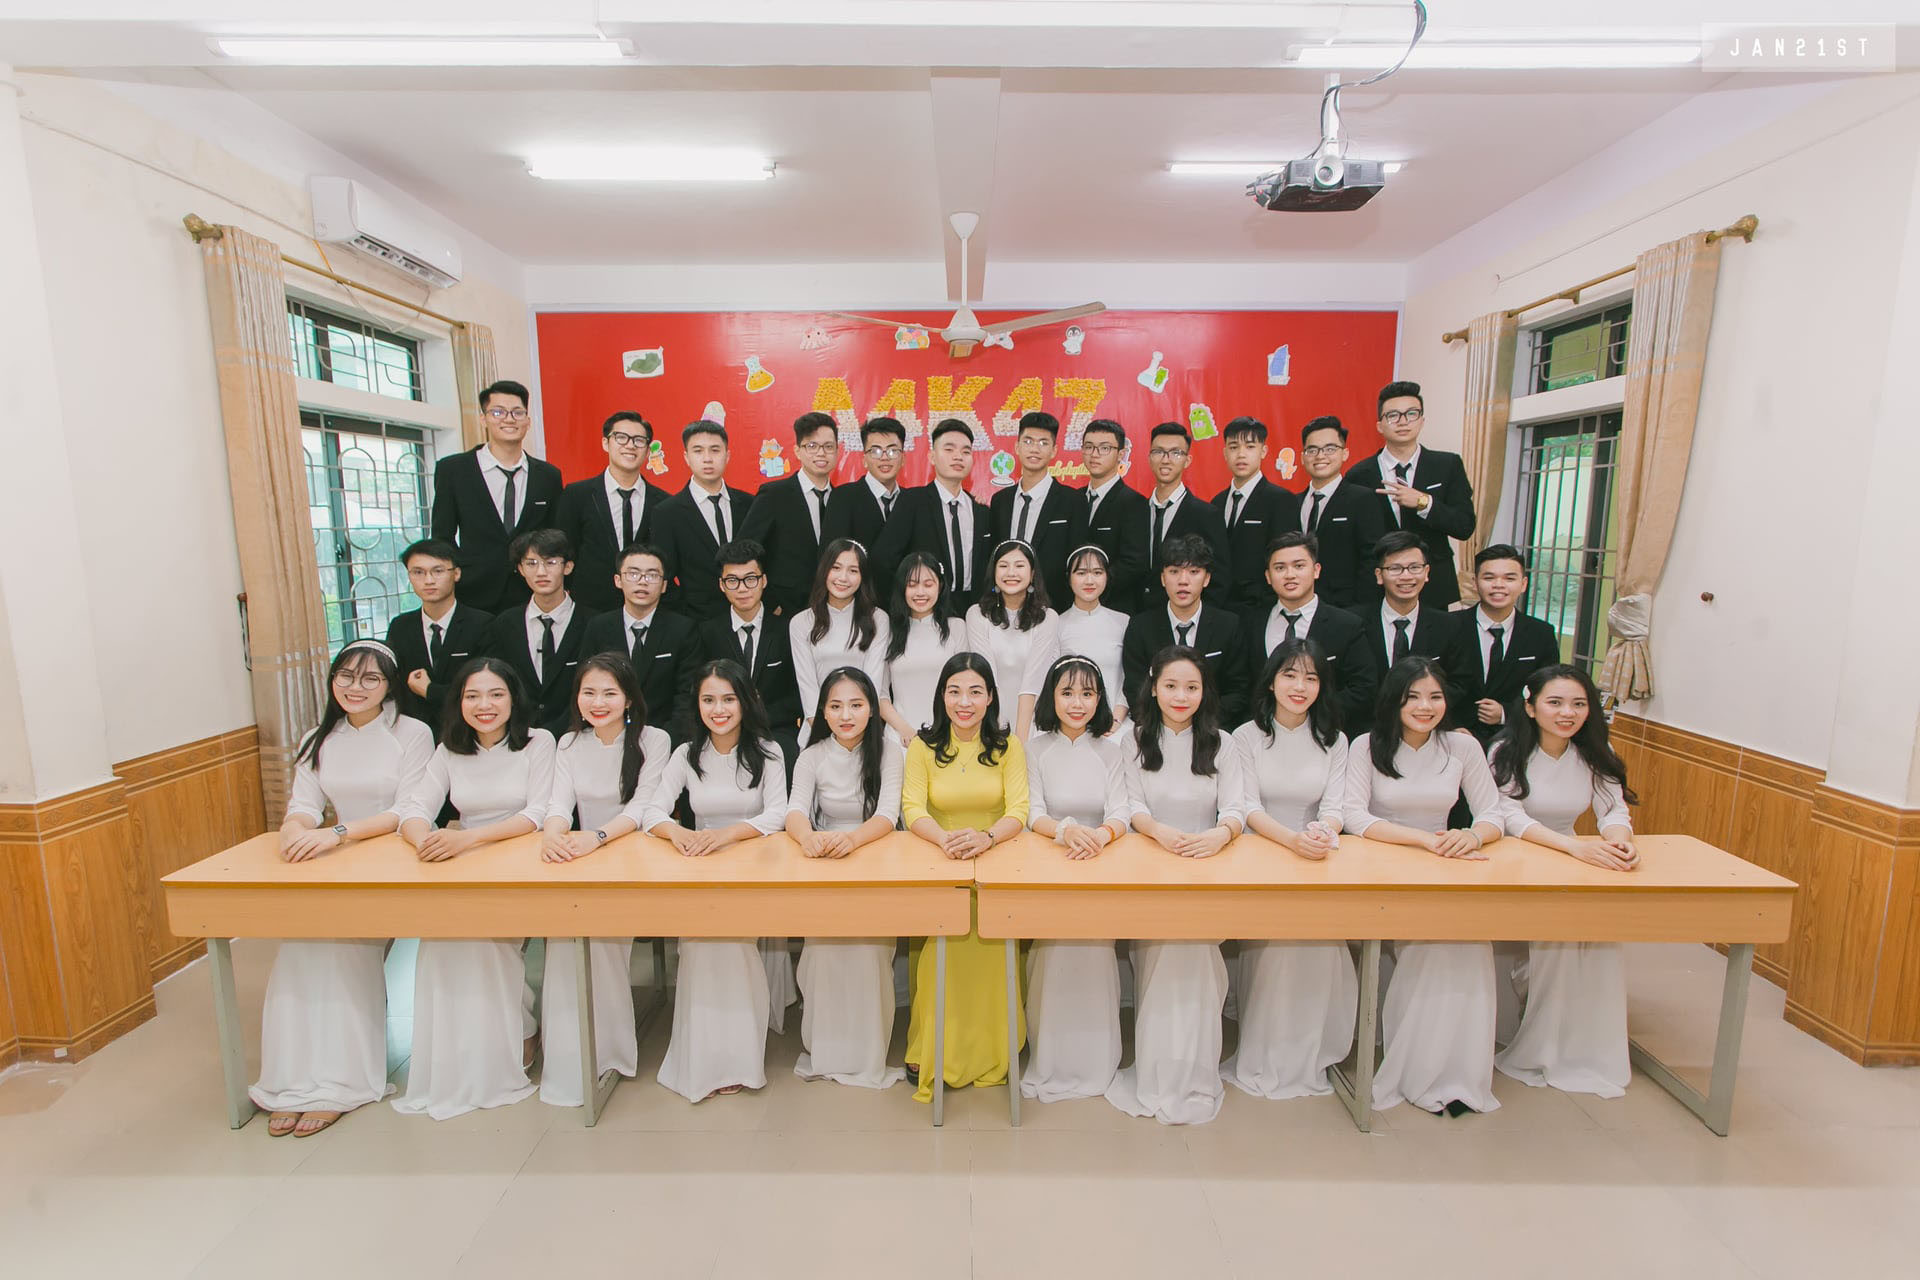 Tập thể lớp 12A4 - Trường THPT chuyên Phan Bội Châu. Ảnh: PV.